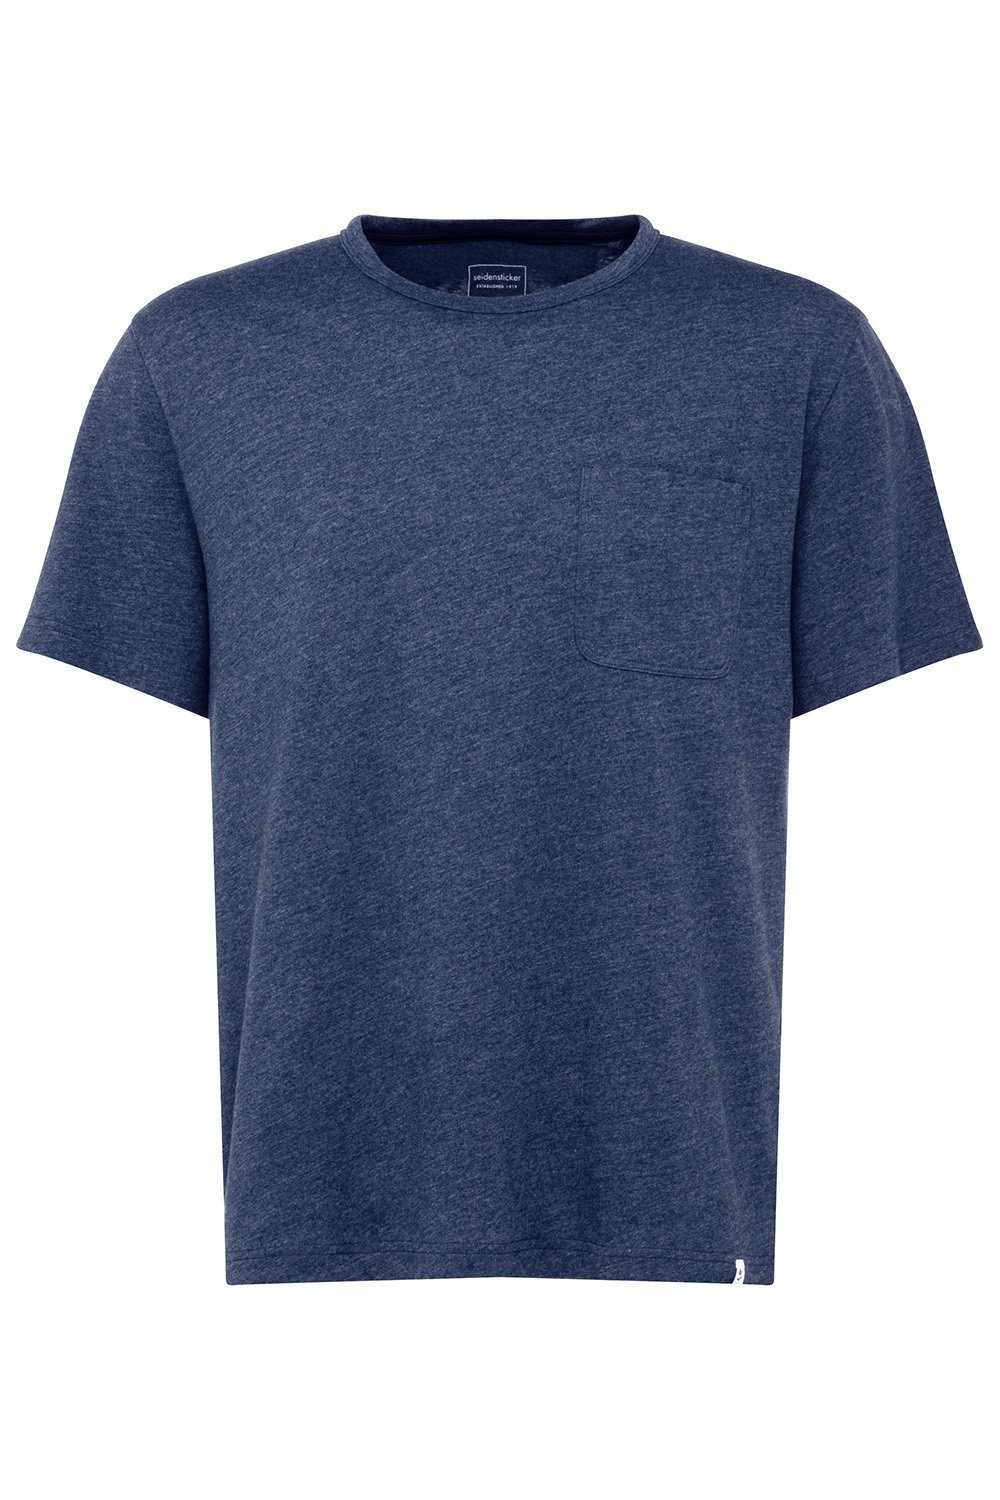 seidensticker Kurzarmshirt T-Shirt 106750 blue melange